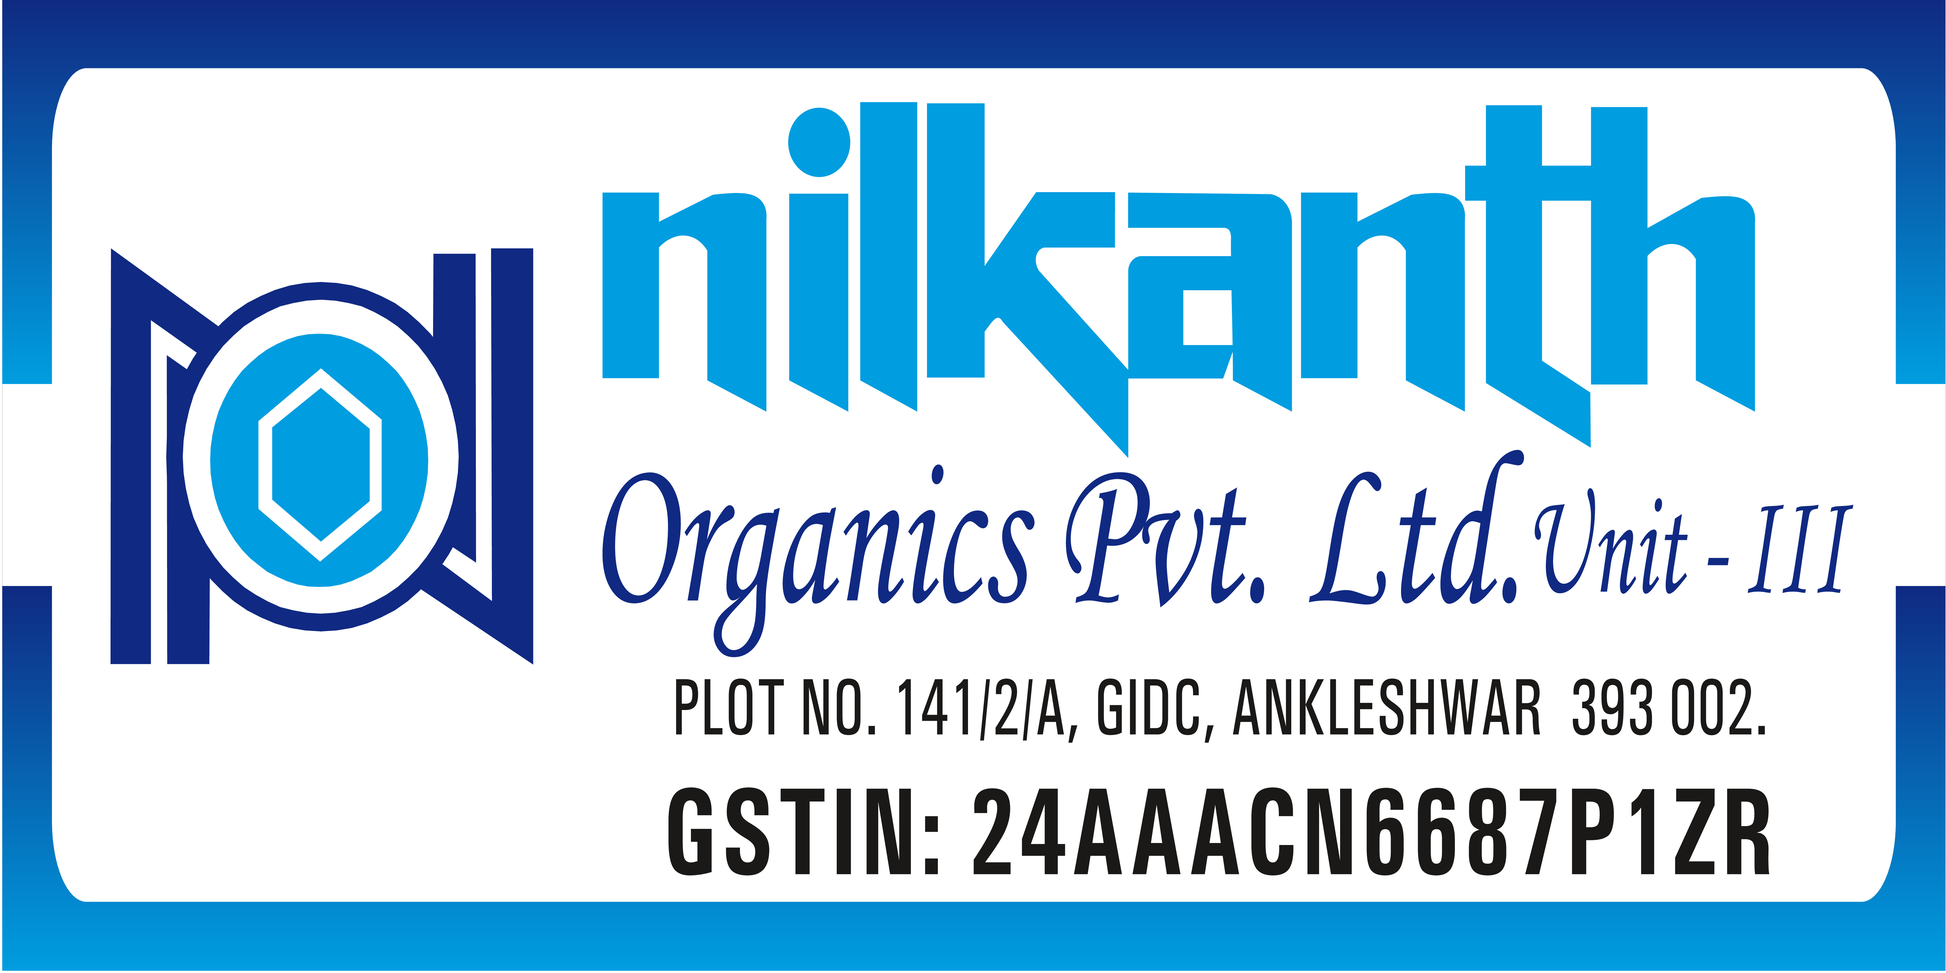 Nilkanth organics pvt ltd unit 3